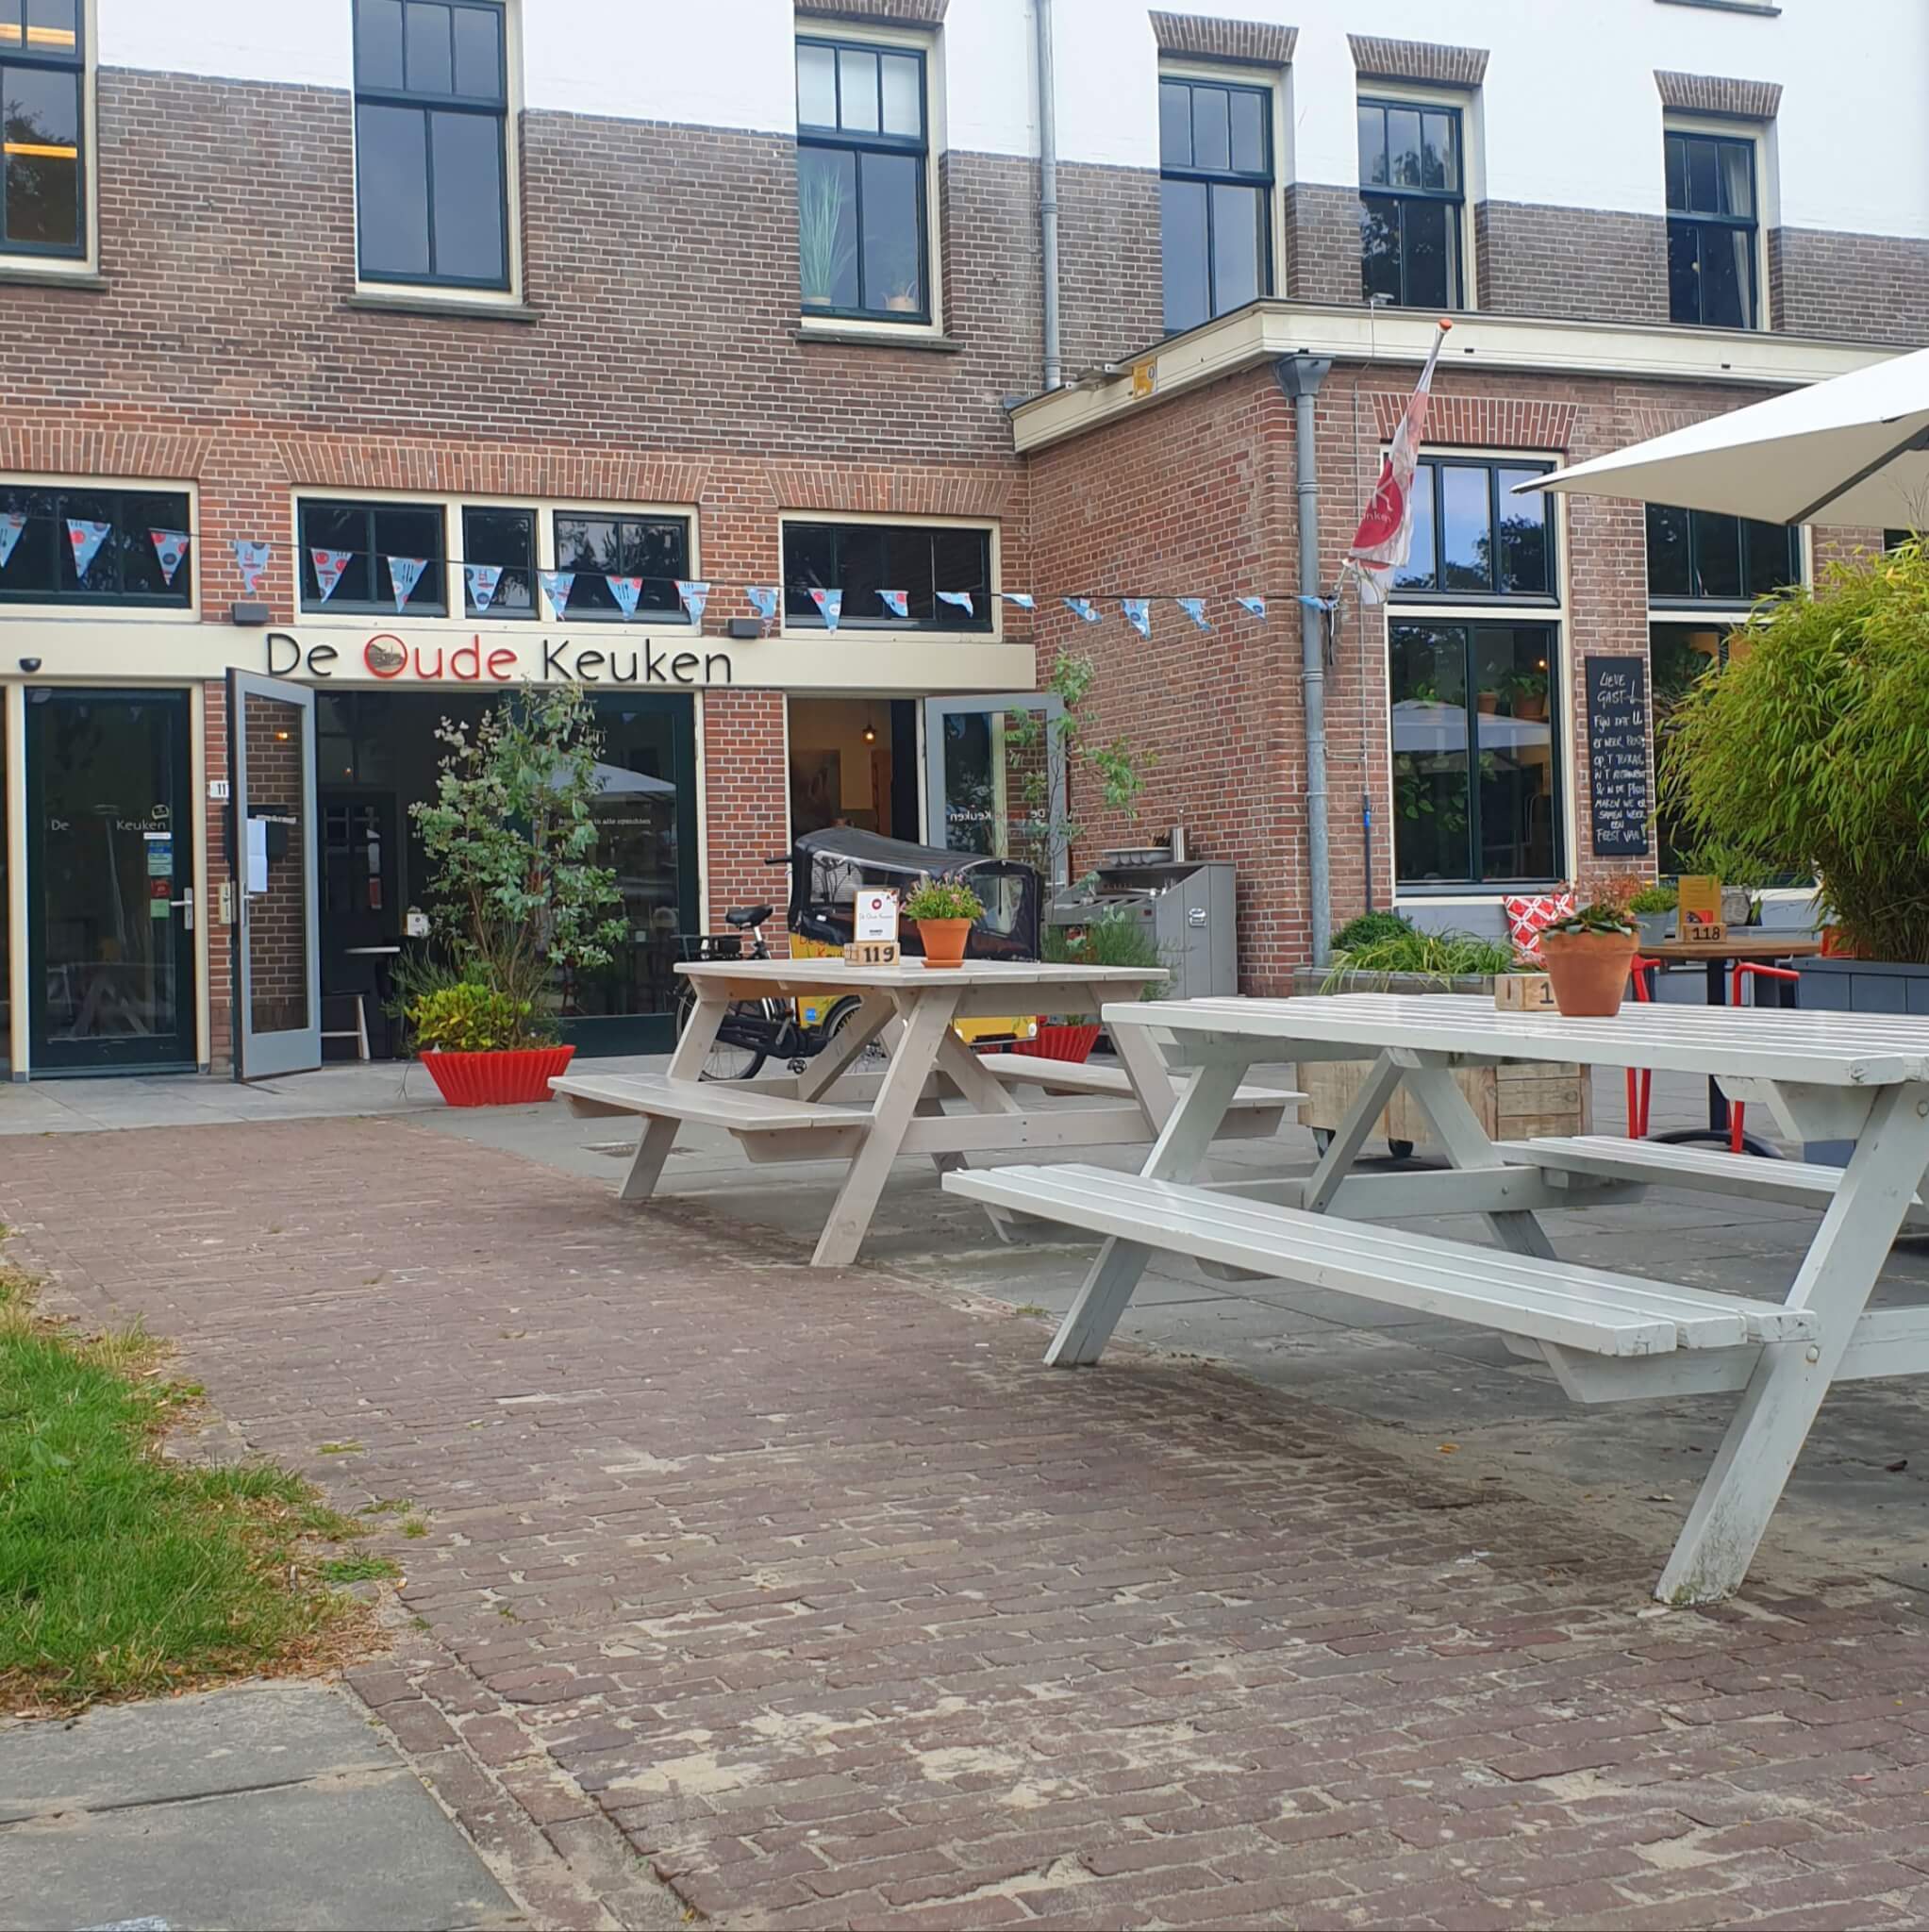 Kindvriendelijke restaurants en hotels: met speeltuin en ander leuks. De Oude Keuken in Bakkum in Castricum. 